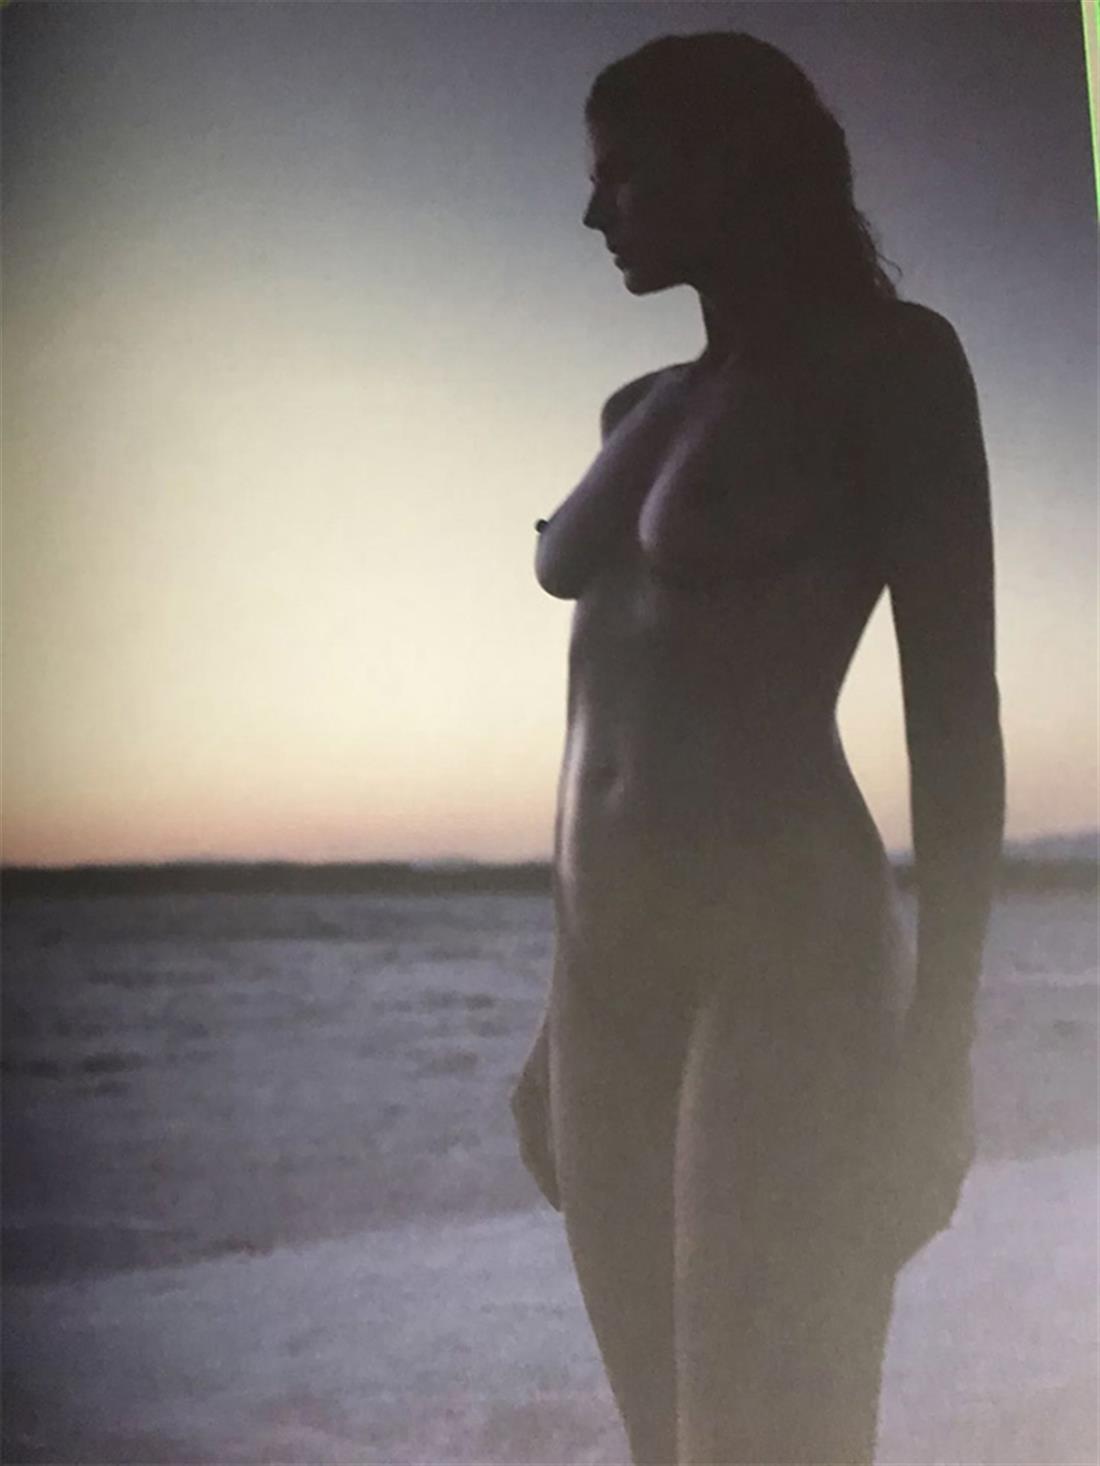 Heidi Klum - γυμνή - φωτογραφίες - βιβλίο